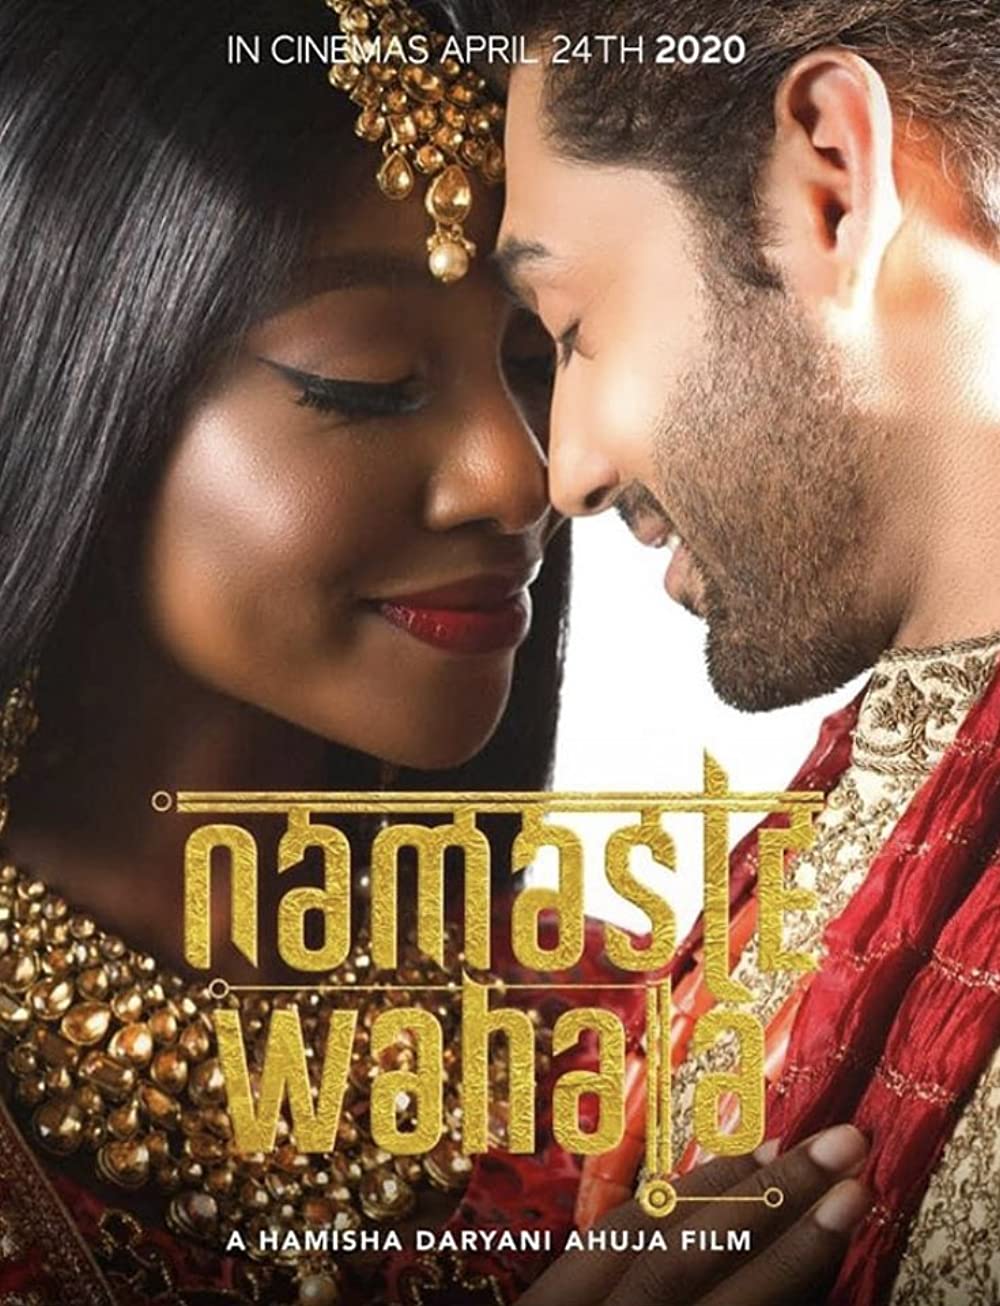 ดูหนังออนไลน์ฟรี Namaste Wahala (2020) นมัสเต วาฮาลา: สวัสดีรักอลวน